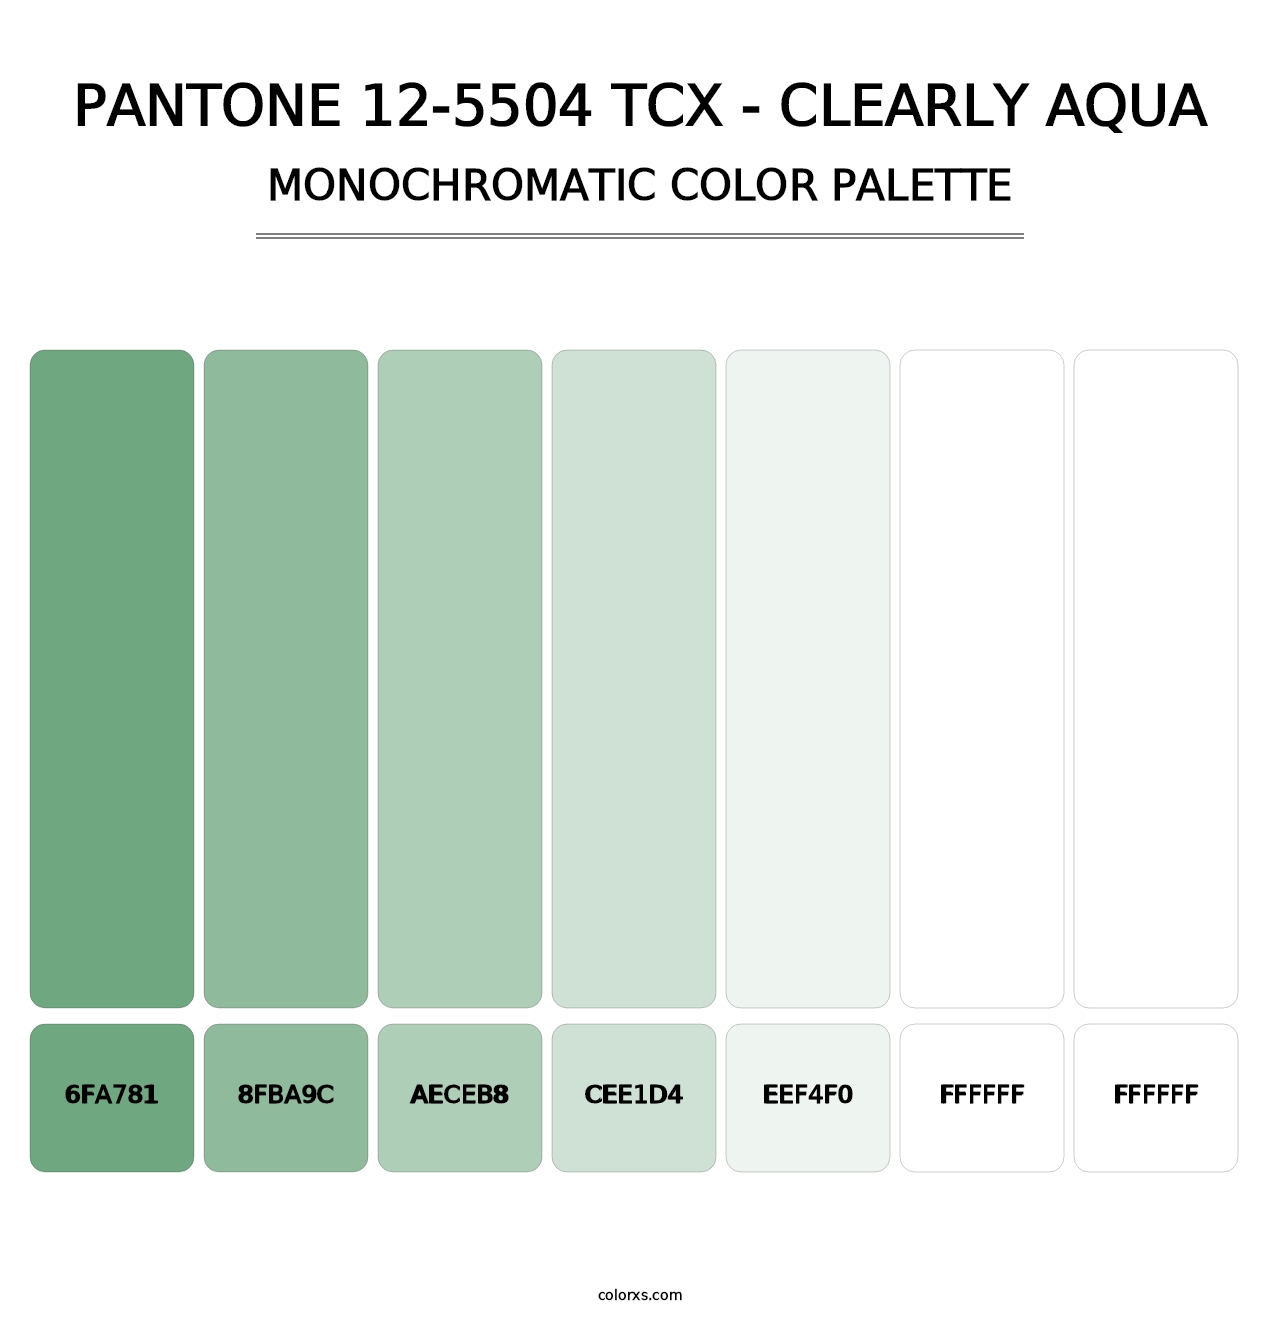 PANTONE 12-5504 TCX - Clearly Aqua - Monochromatic Color Palette